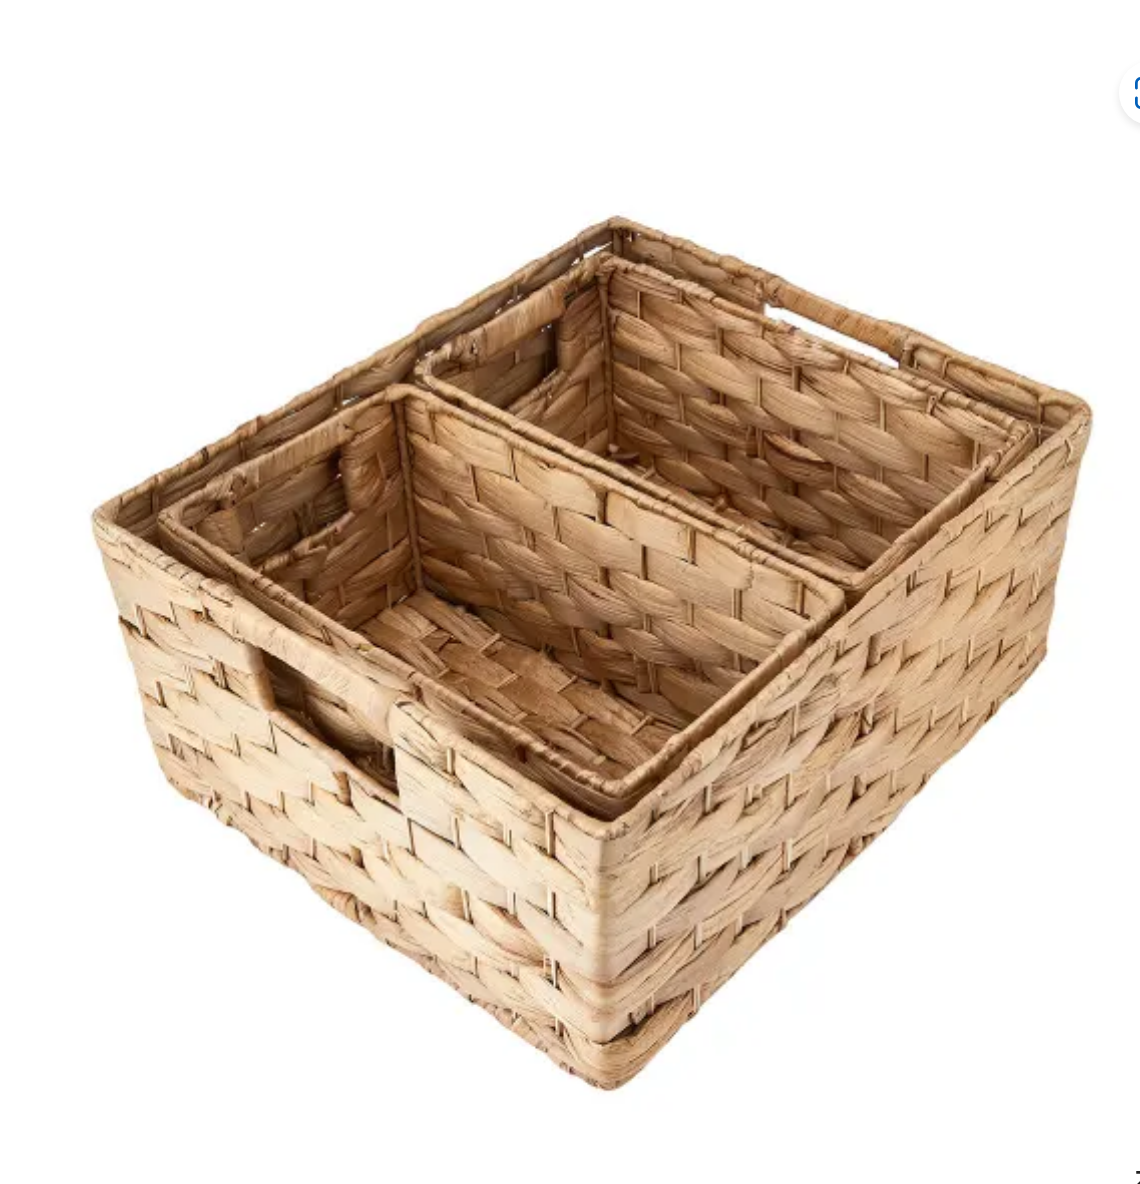 3 set of Baskets